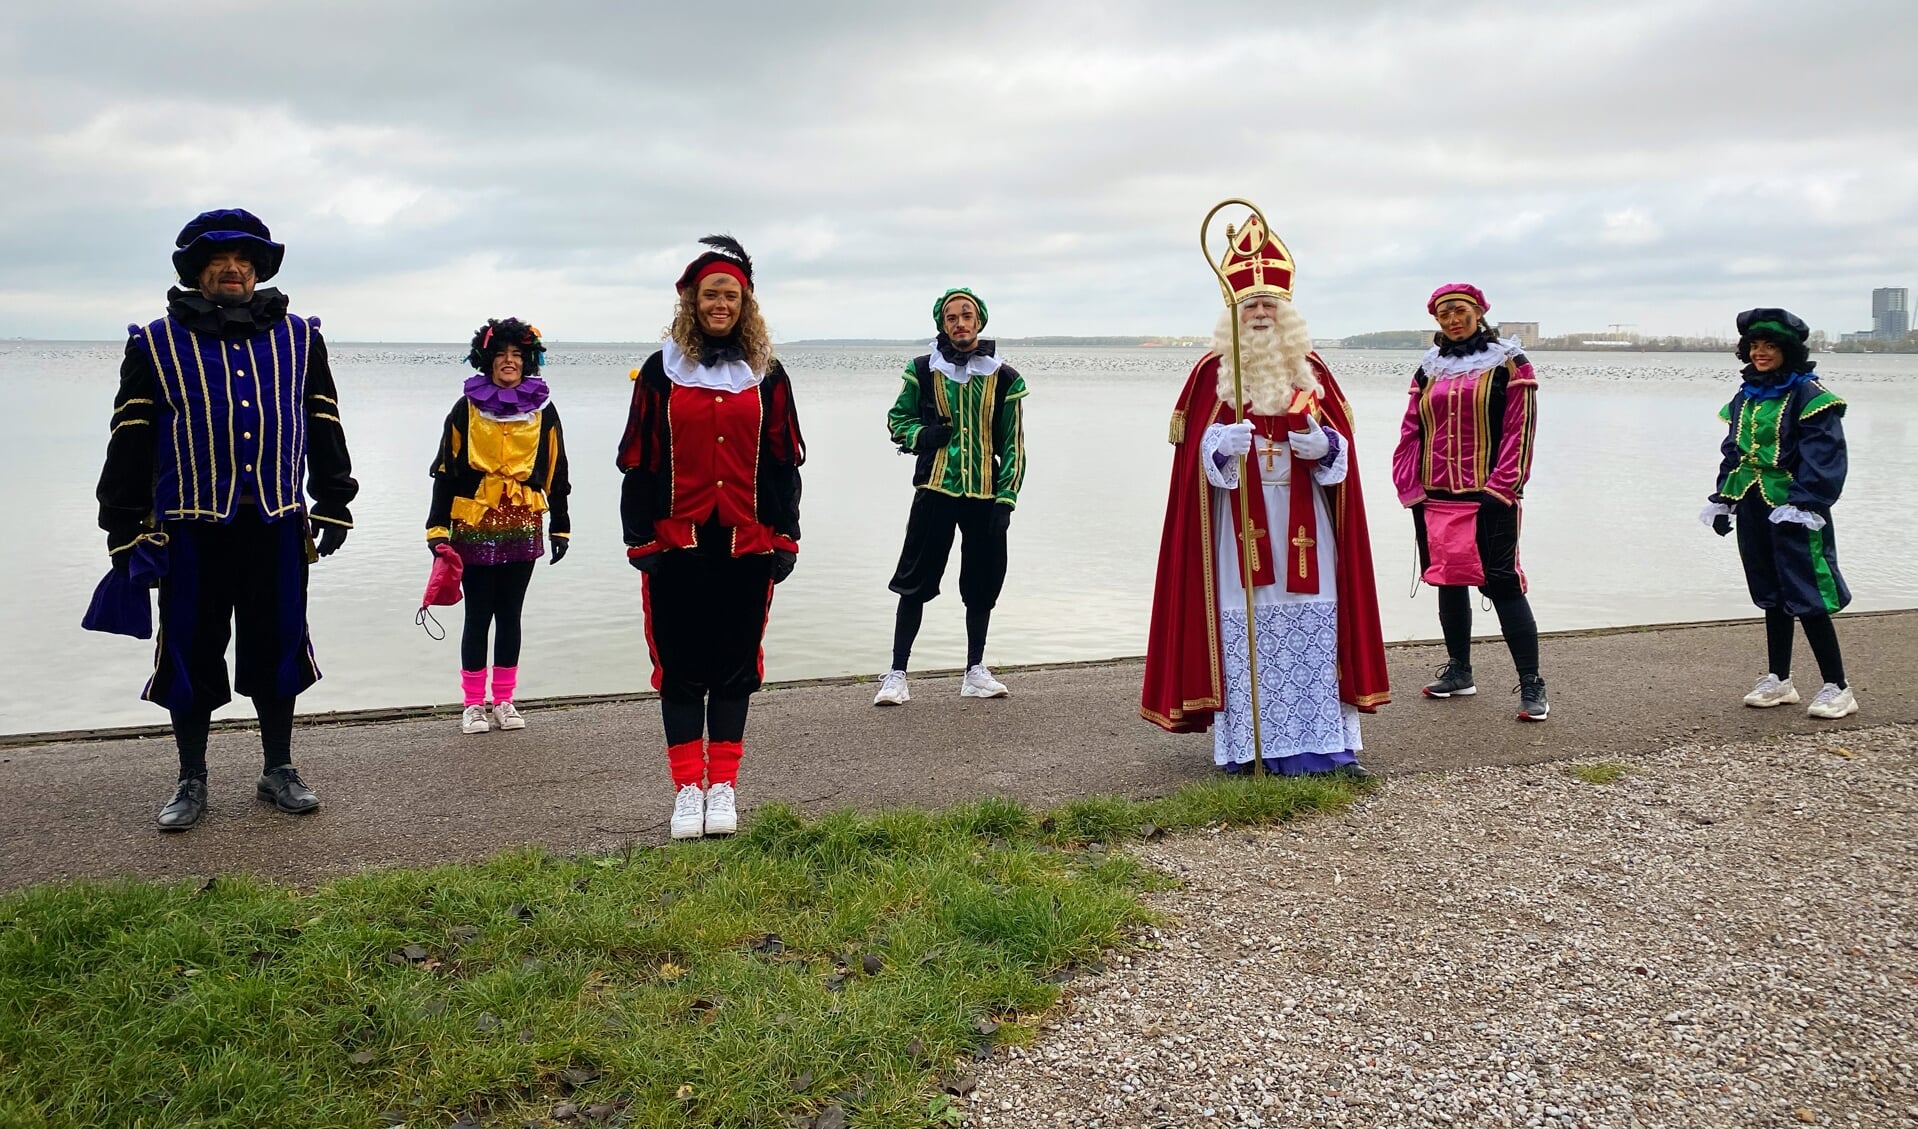 Sinterklaas en zijn Pieten waren verrast dat er geen zingende kinderen op het strand stonden om hen te verwelkomen. 